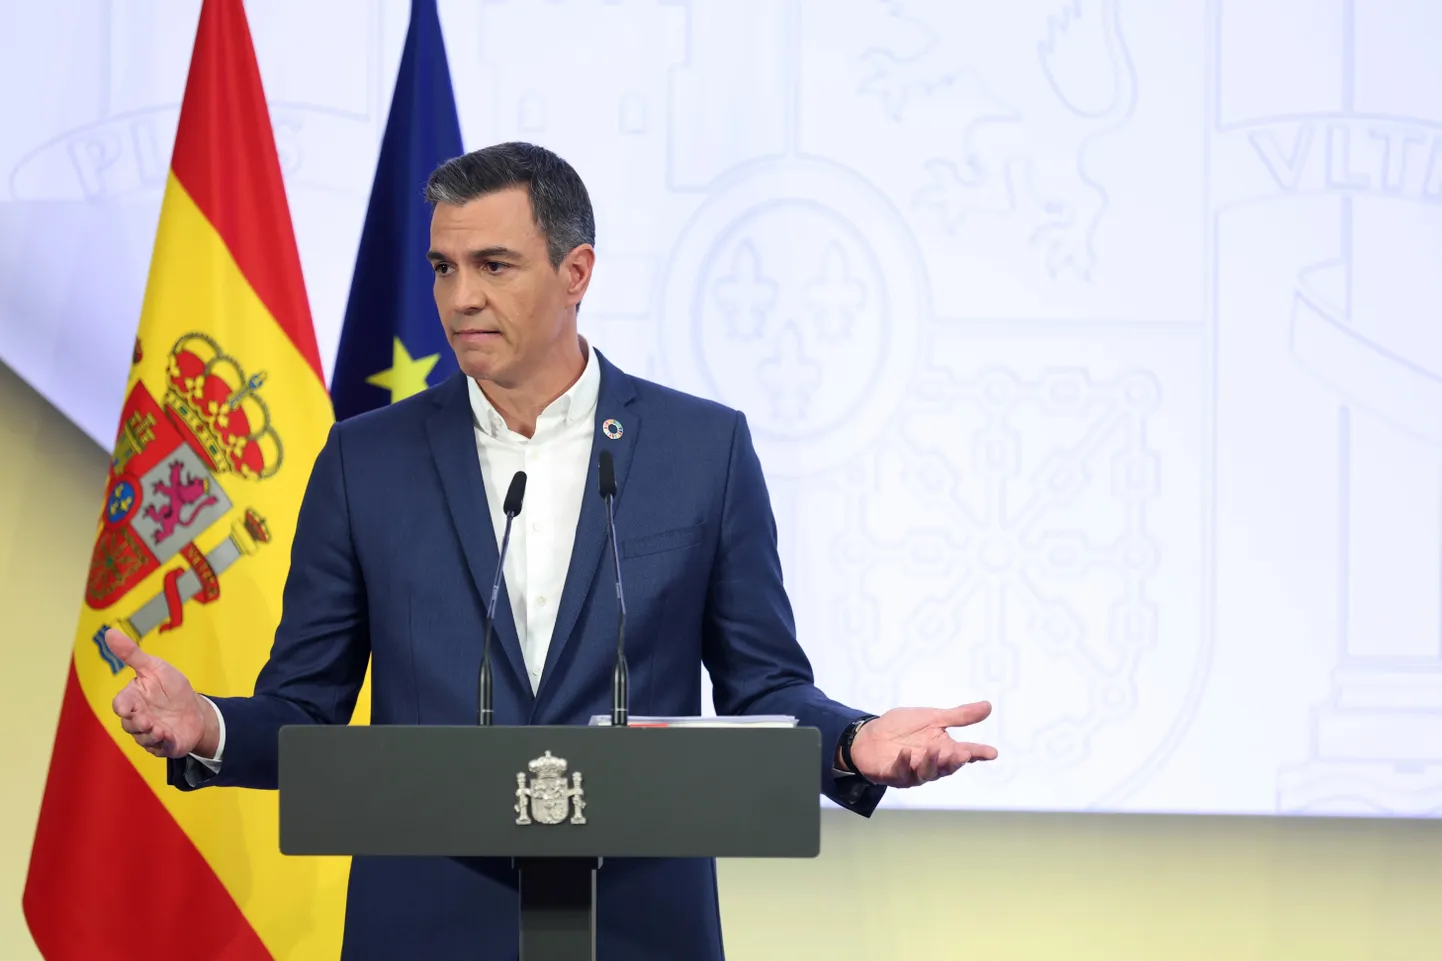 Lipsuta Hispaania peaminister Pedro Sánchez tegi kontoritöötajatele üleskutse lipsud varna jätta.